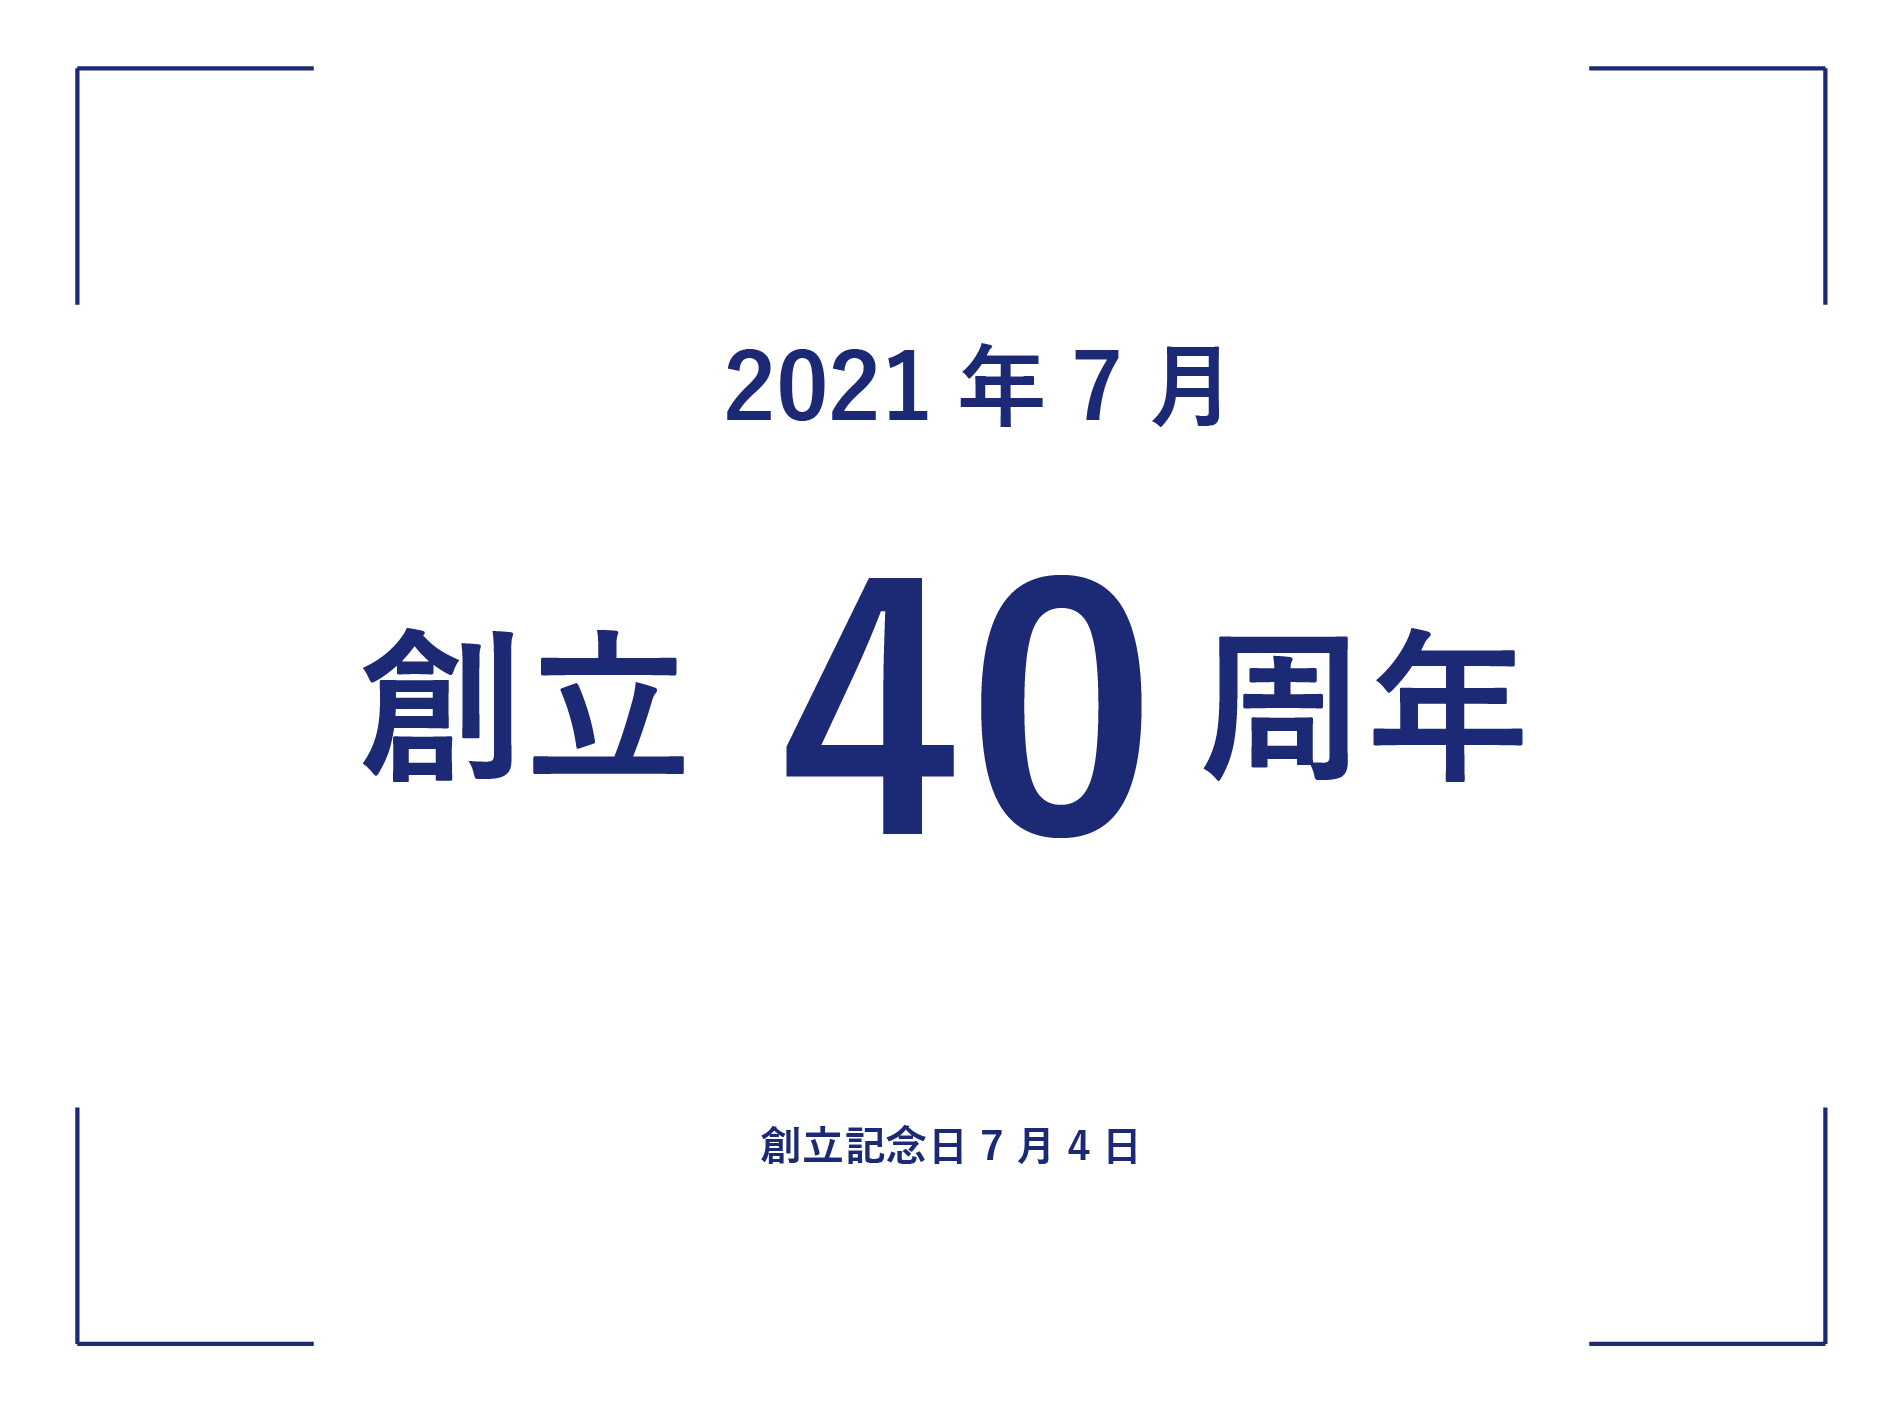 創立40周年 創立記念日7月4日